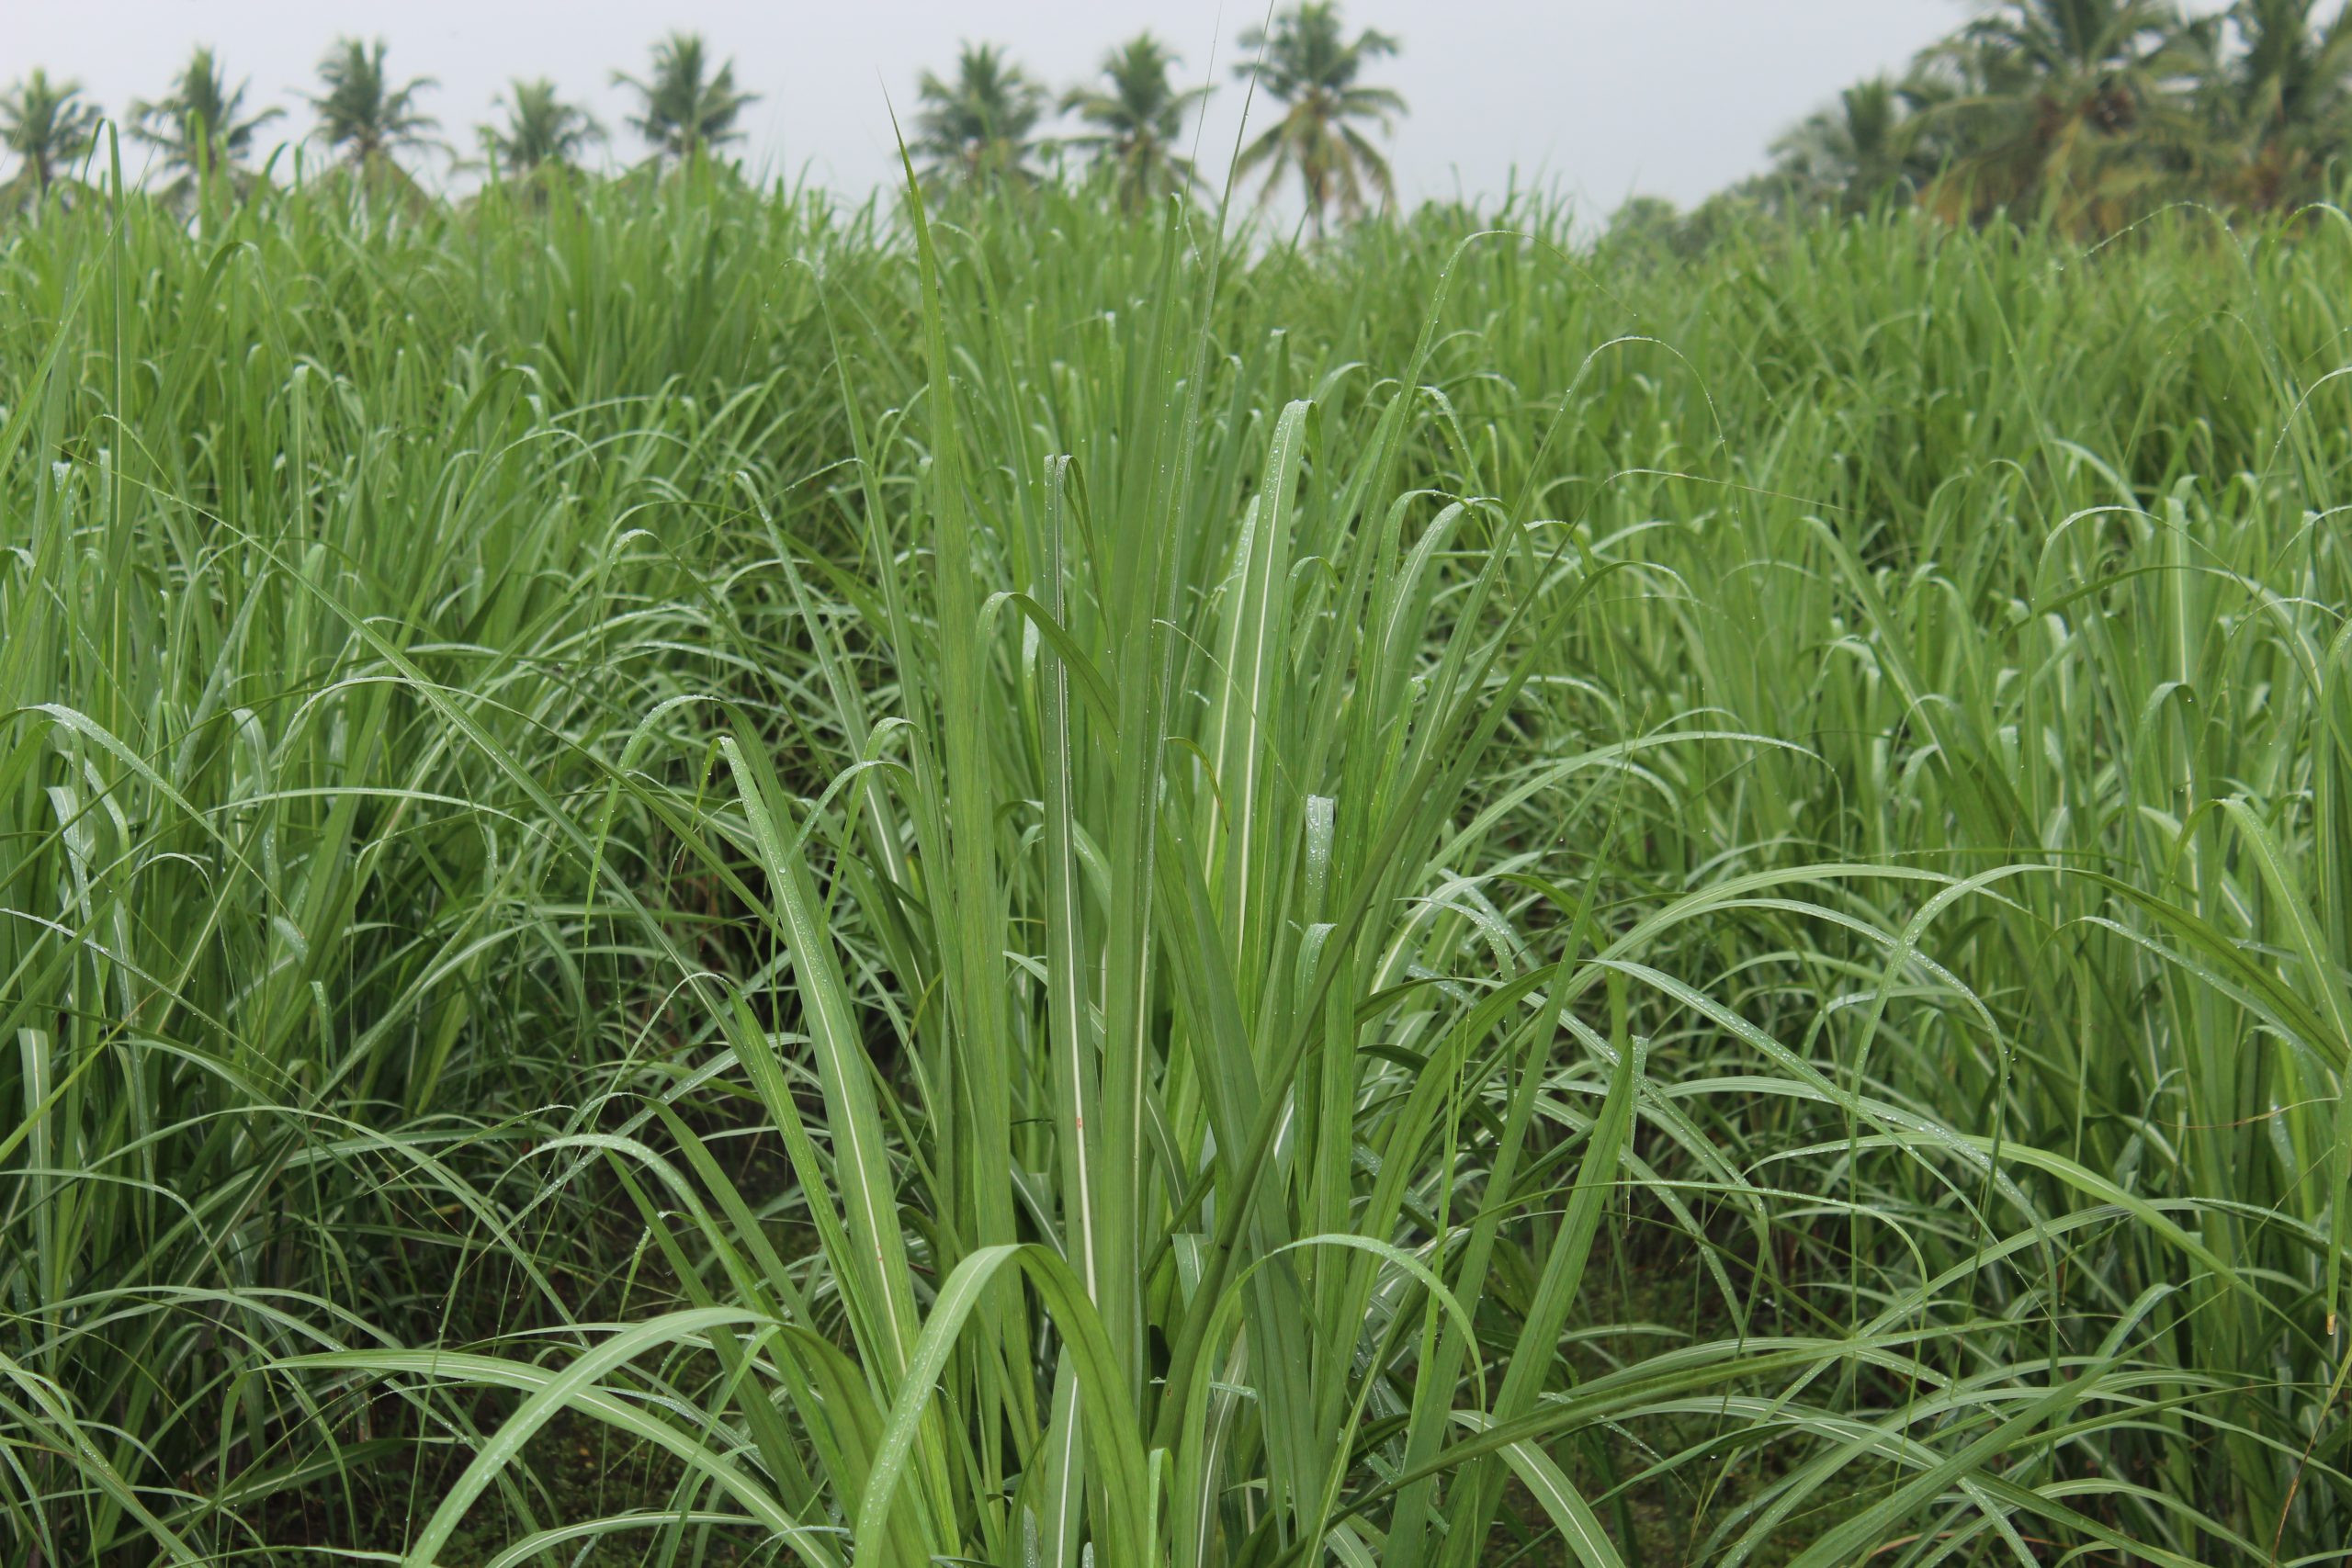 Sugarcanes plantation in a field